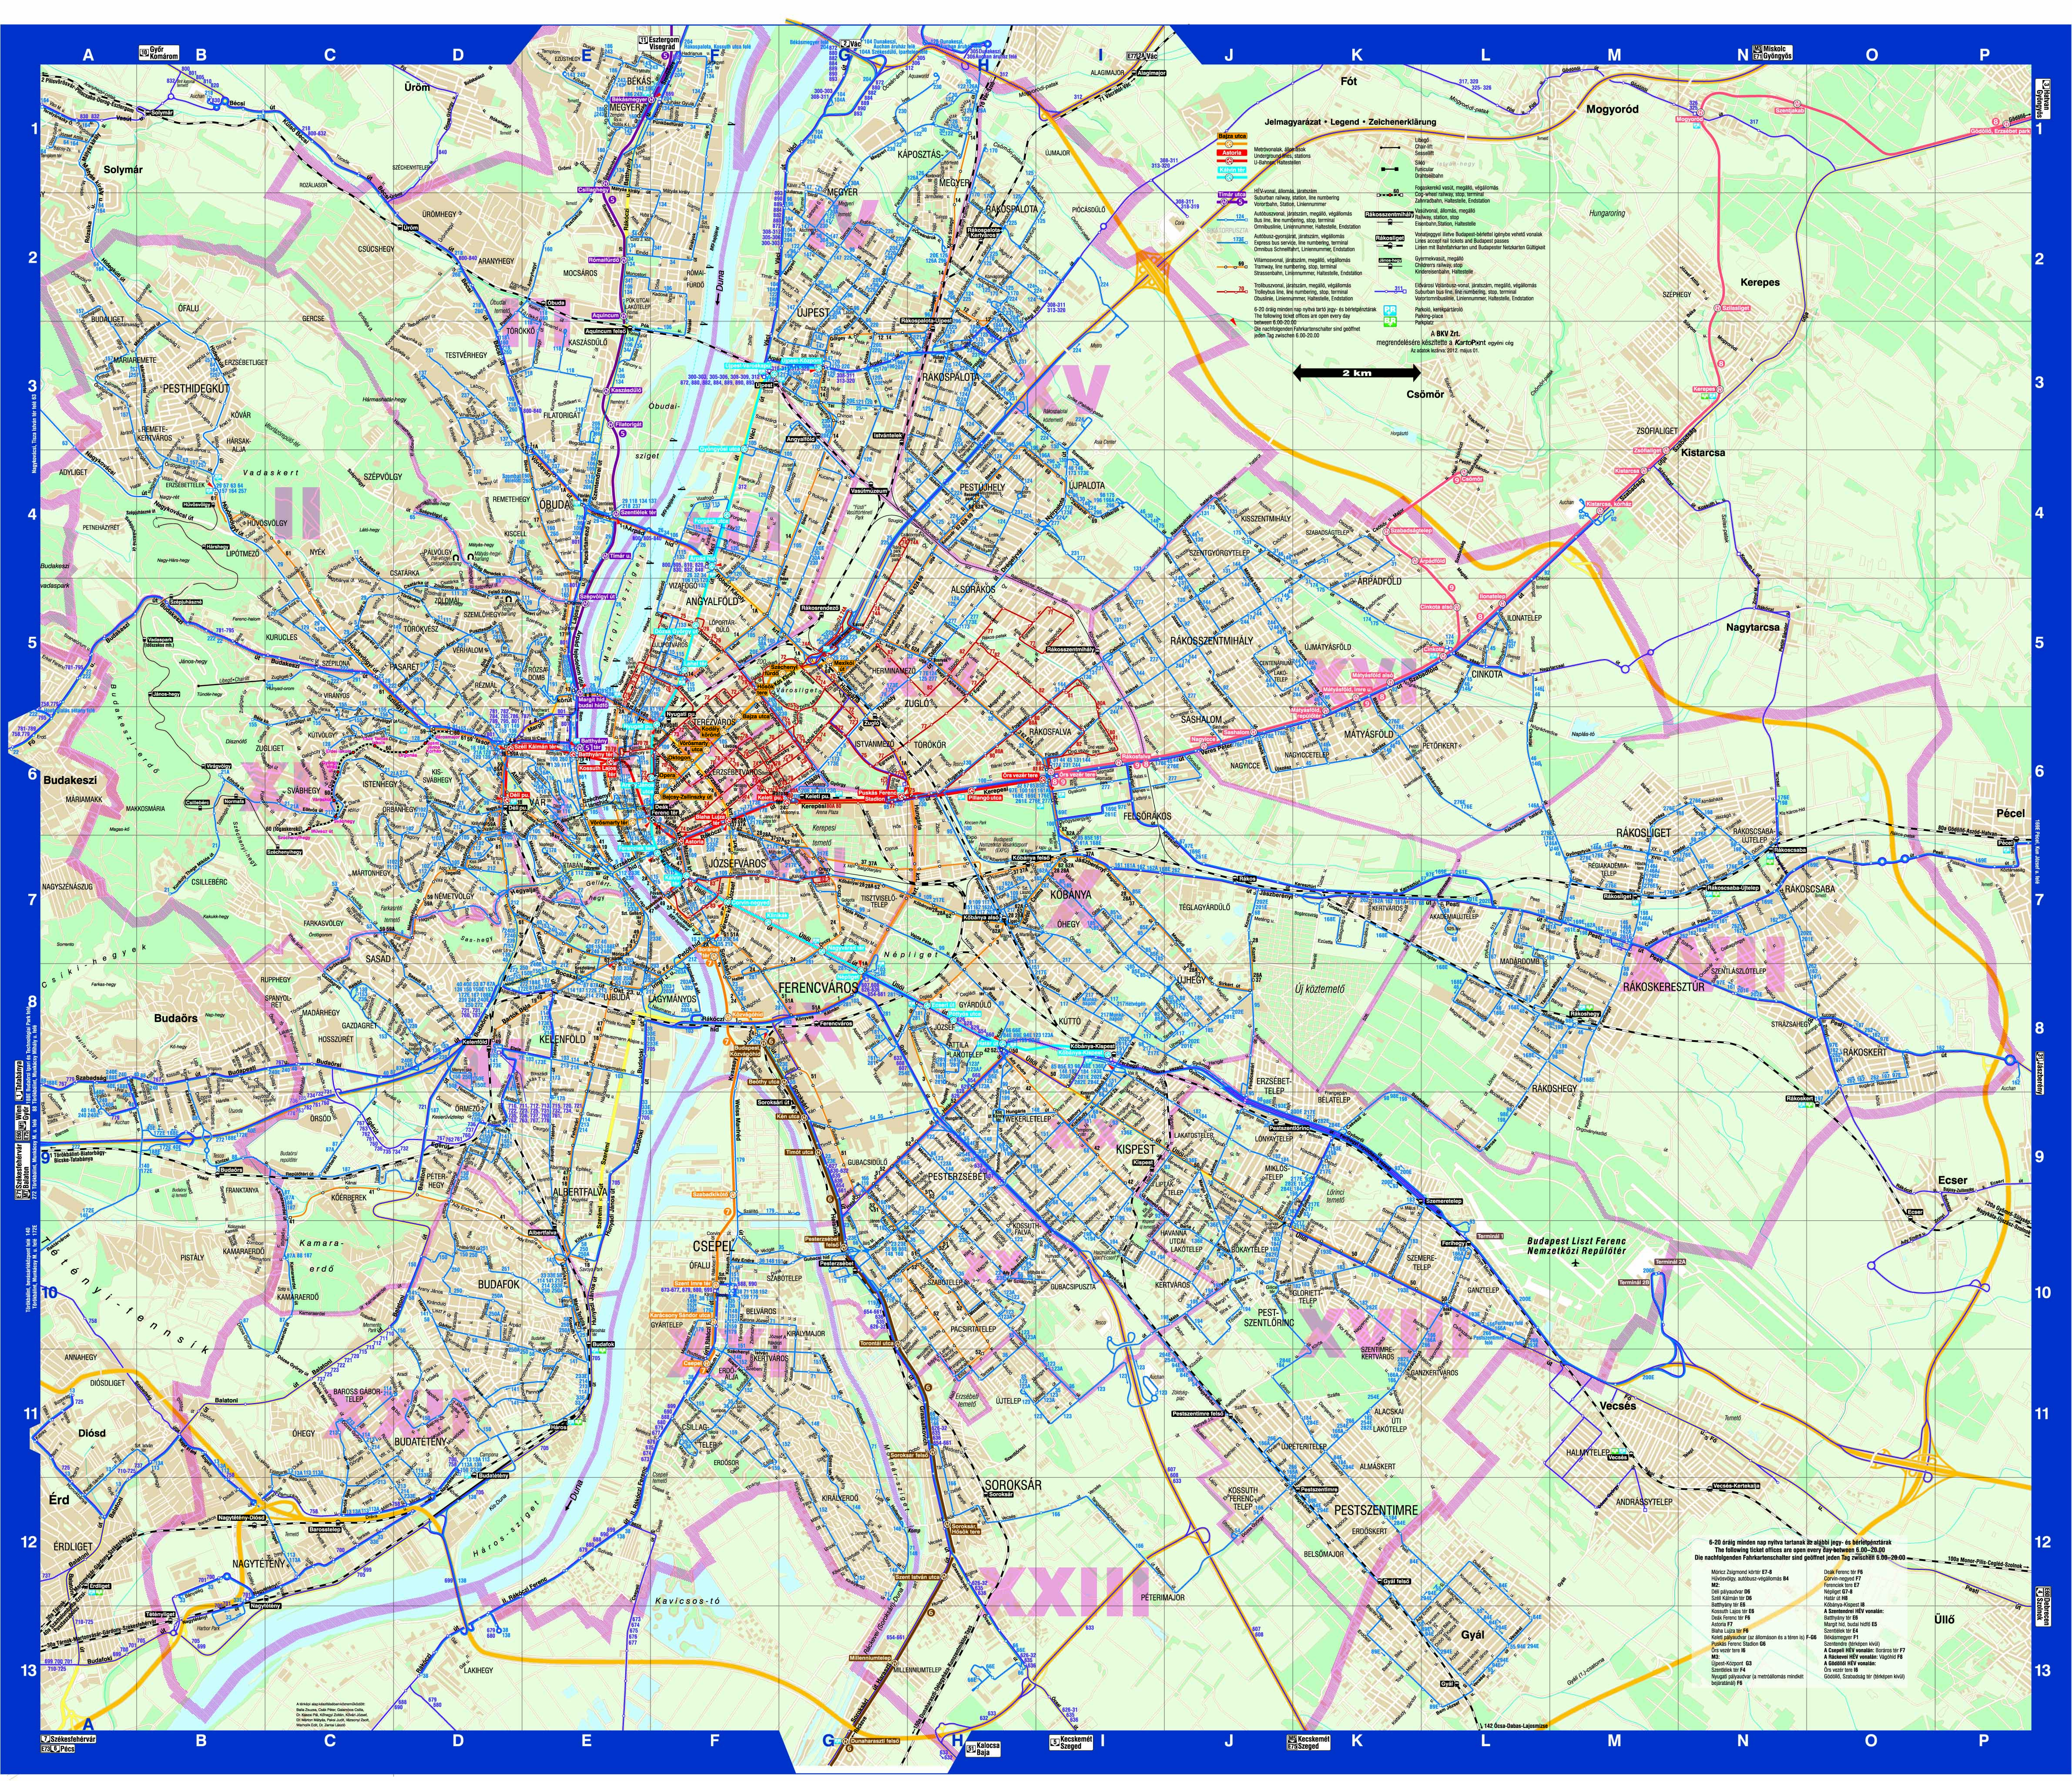 busz térkép budapest Budapest közösségi közlekekedésének utasterheltsége busz térkép budapest